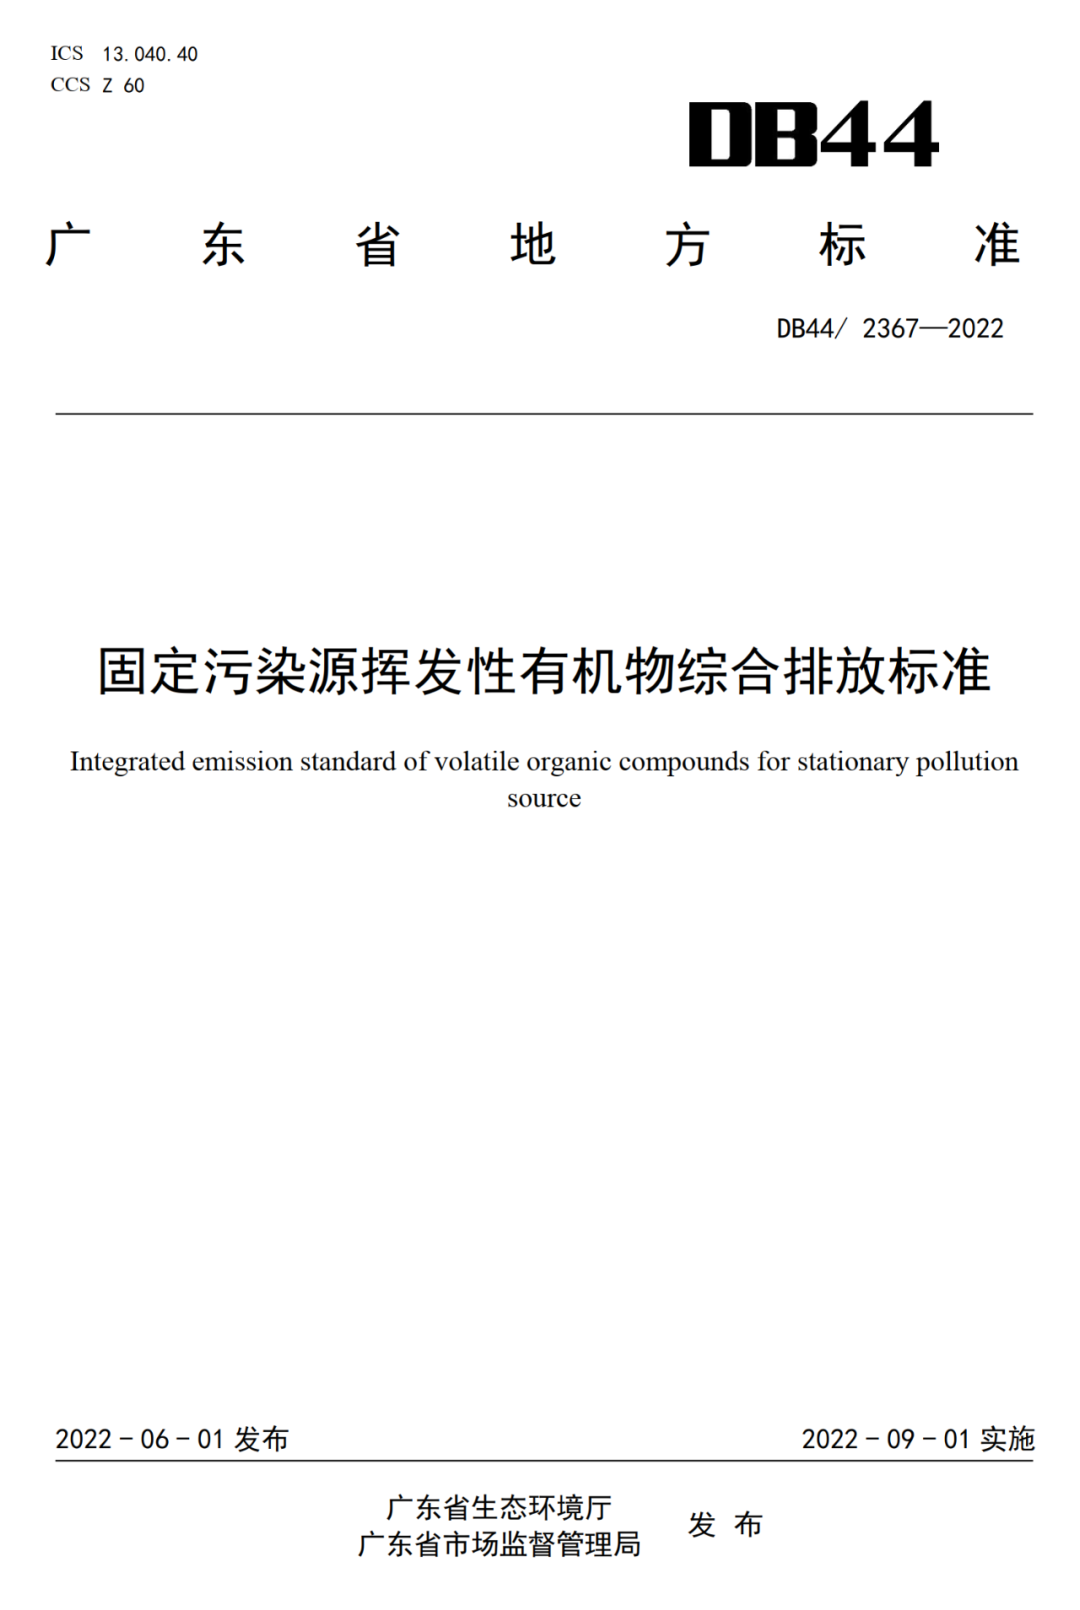 廣東省VOCs廢氣綜合排放標準